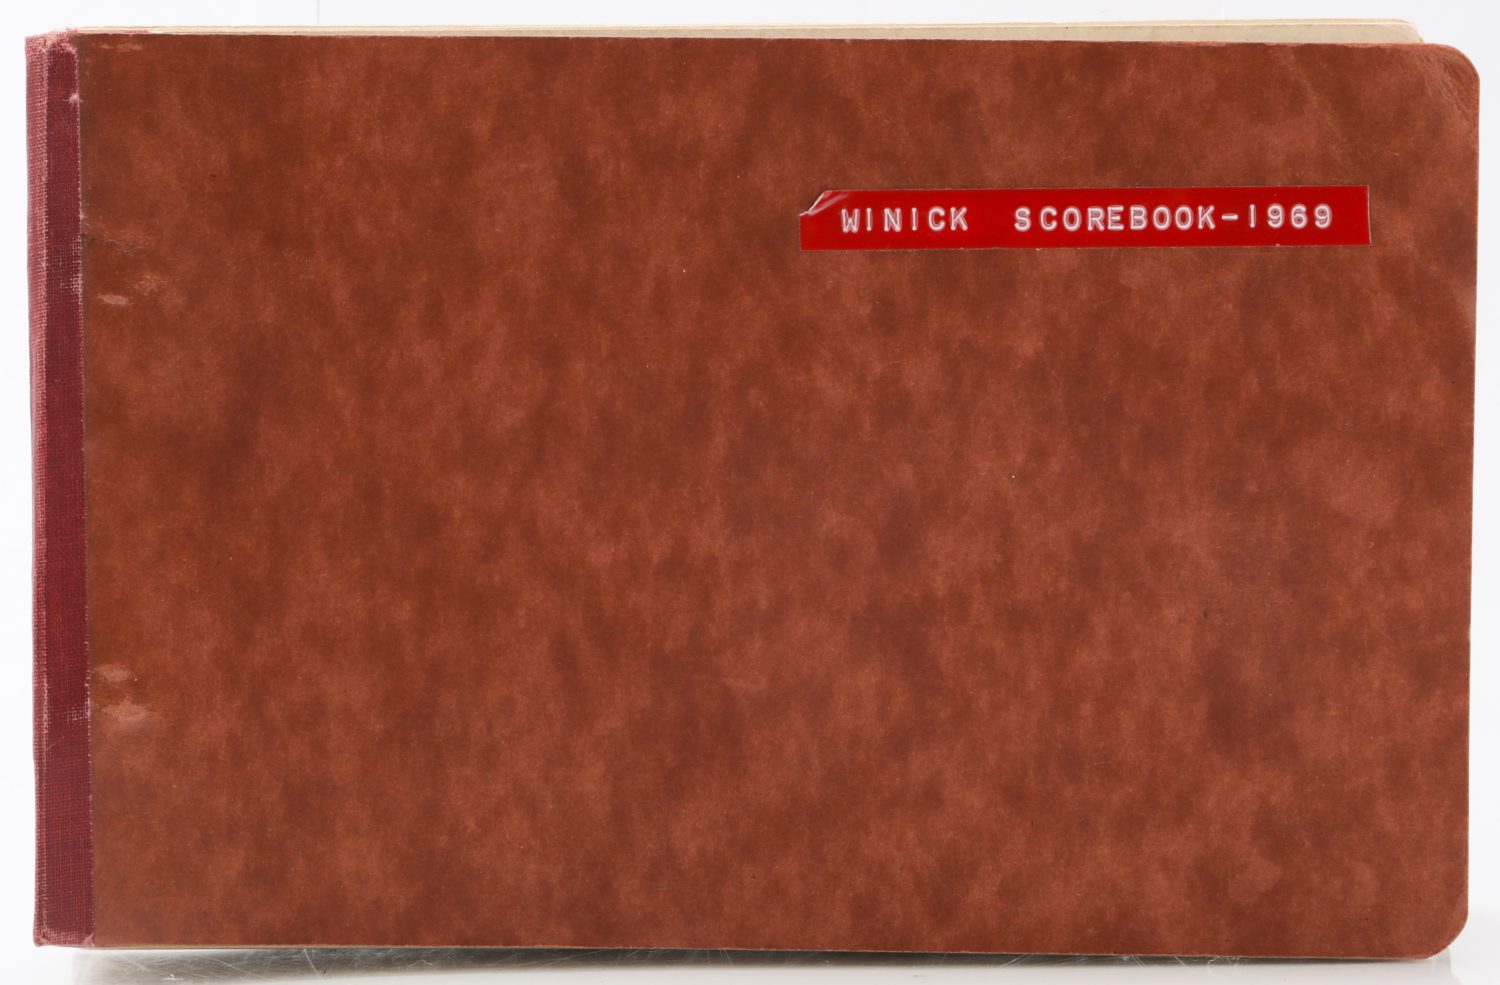 Matt Winick Scorebook from Mets 1969 Season